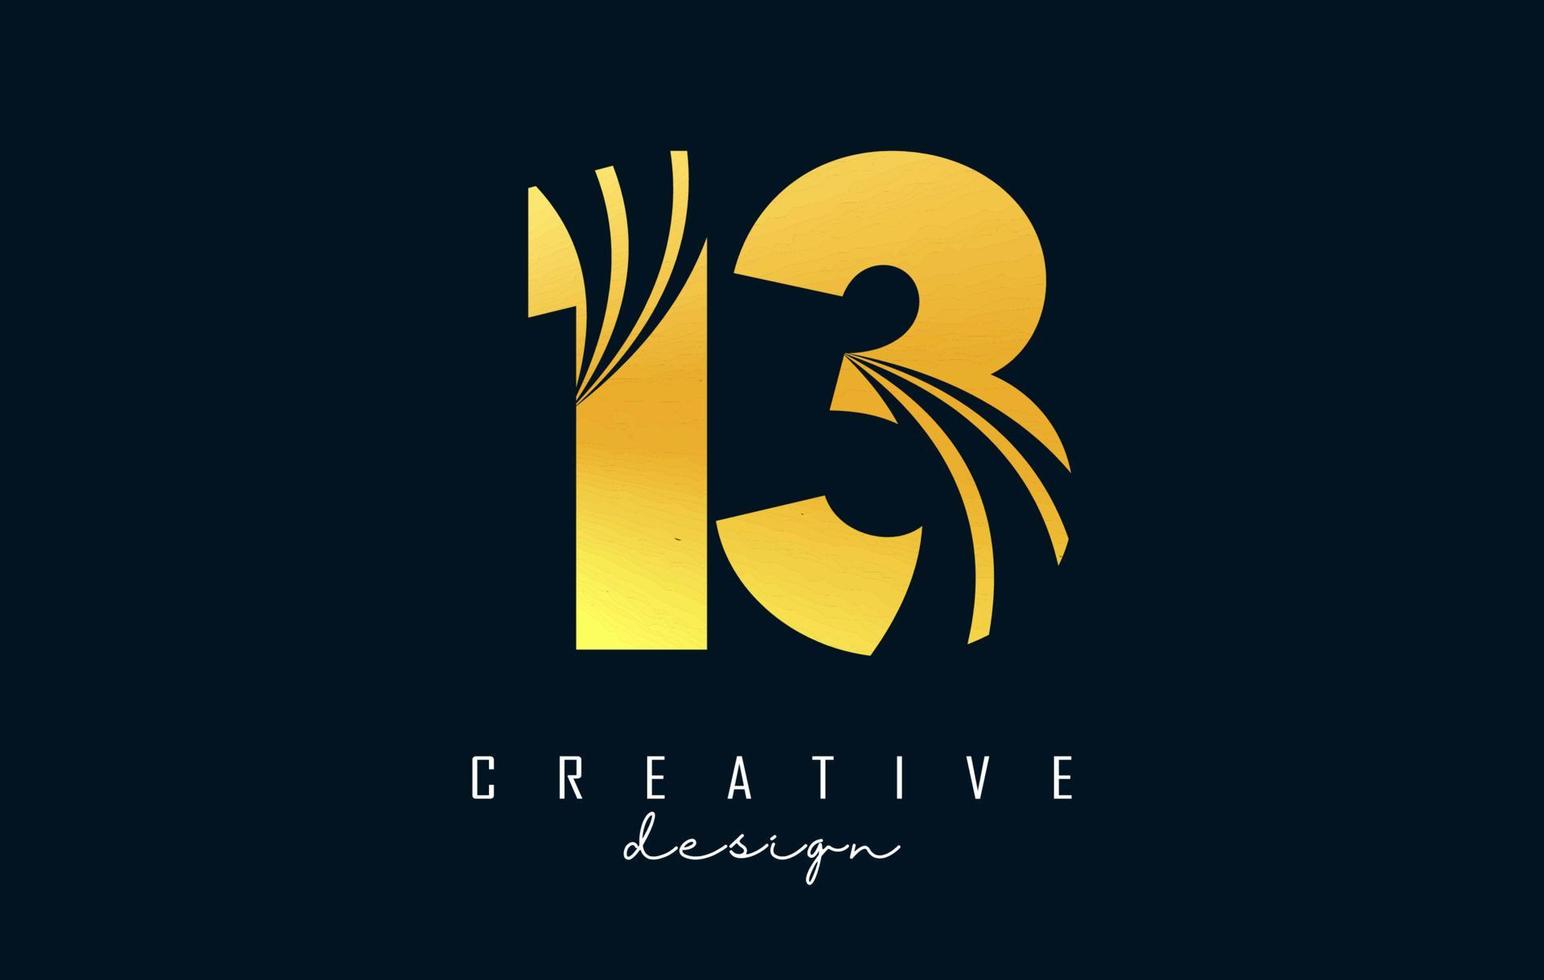 logotipo dorado creativo número 13 1 3 con líneas principales y diseño de concepto de carretera. número con diseño geométrico. vector